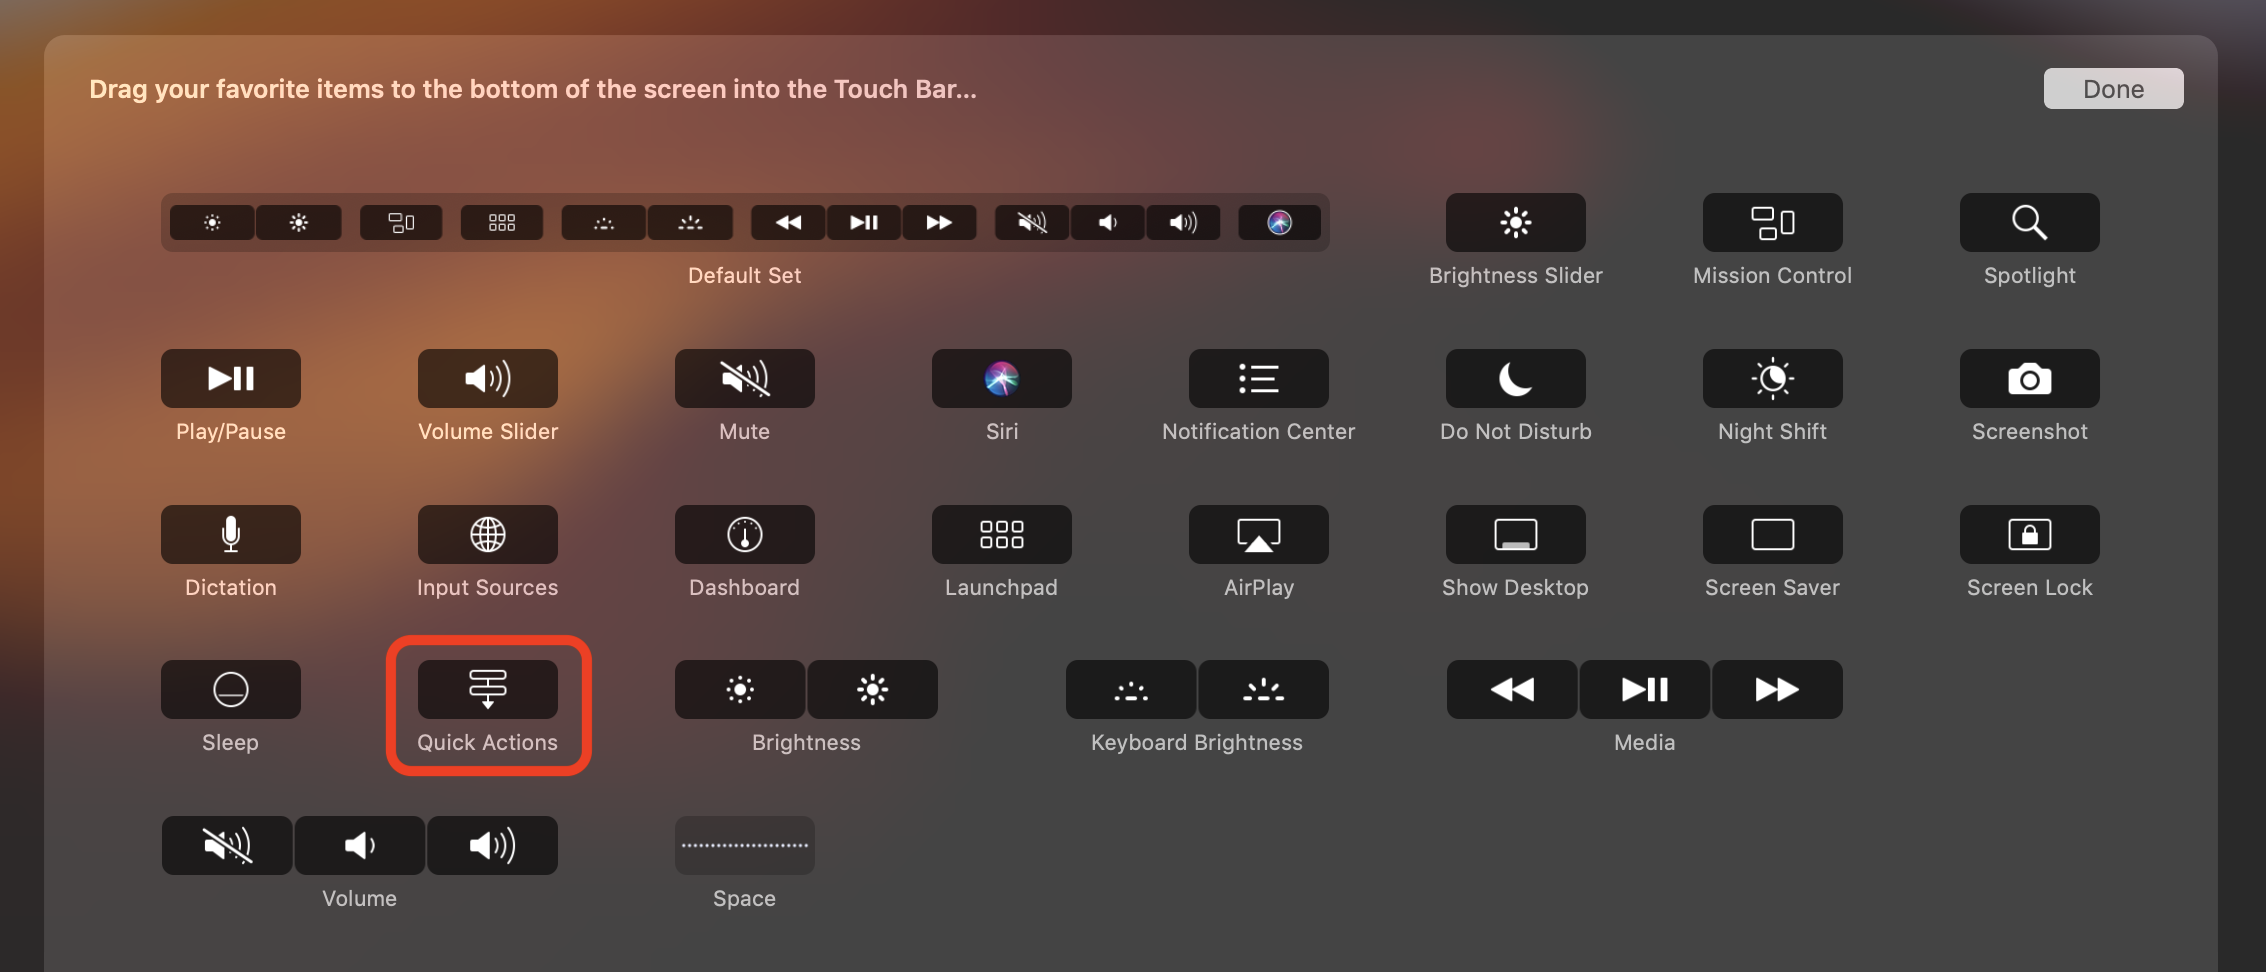 customize-touchbar-options